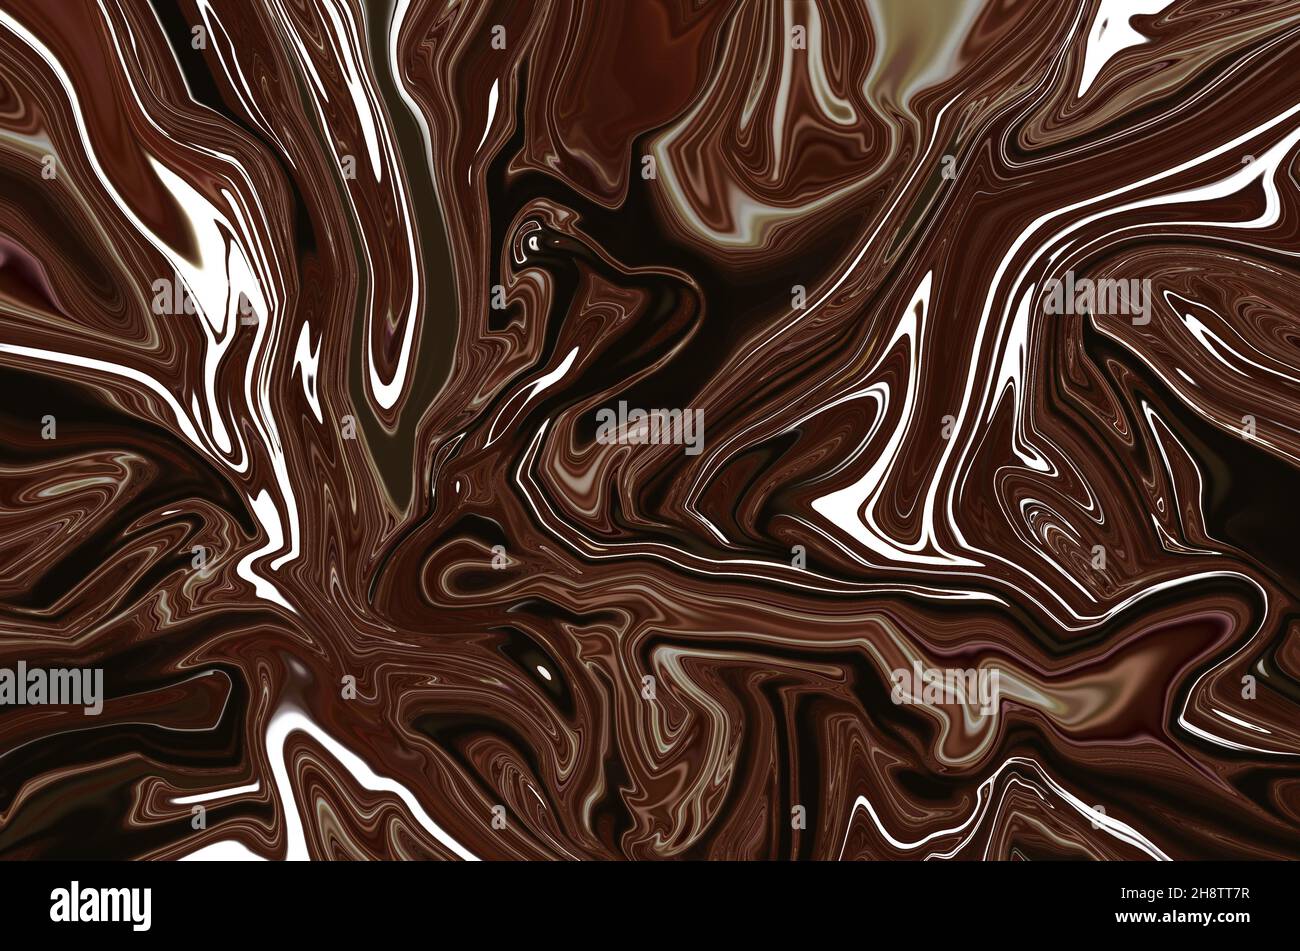 Marron foncé marbre liquide psychédélique fluide art abstrait design de fond.Style tendance en marbre brun.Idéal pour le Web, la publicité, les tirages, les fonds d'écran. Banque D'Images